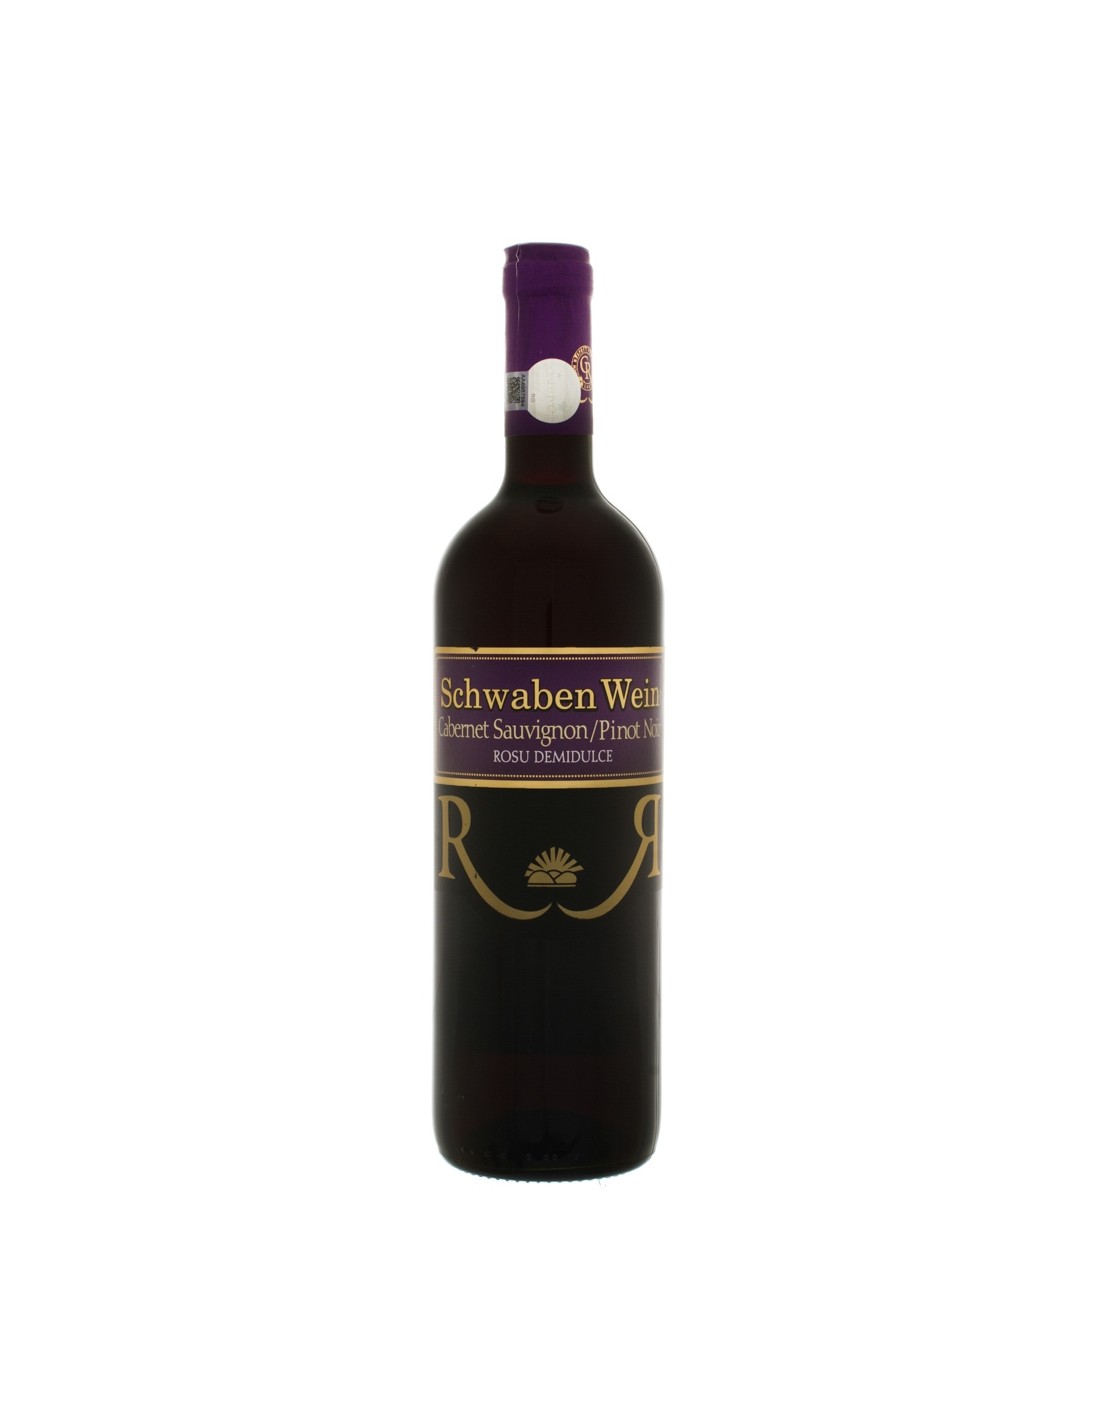 Vin rosu demidulce, Schwaben Wein Recas, 0.75L, 12.5% alc., Romania